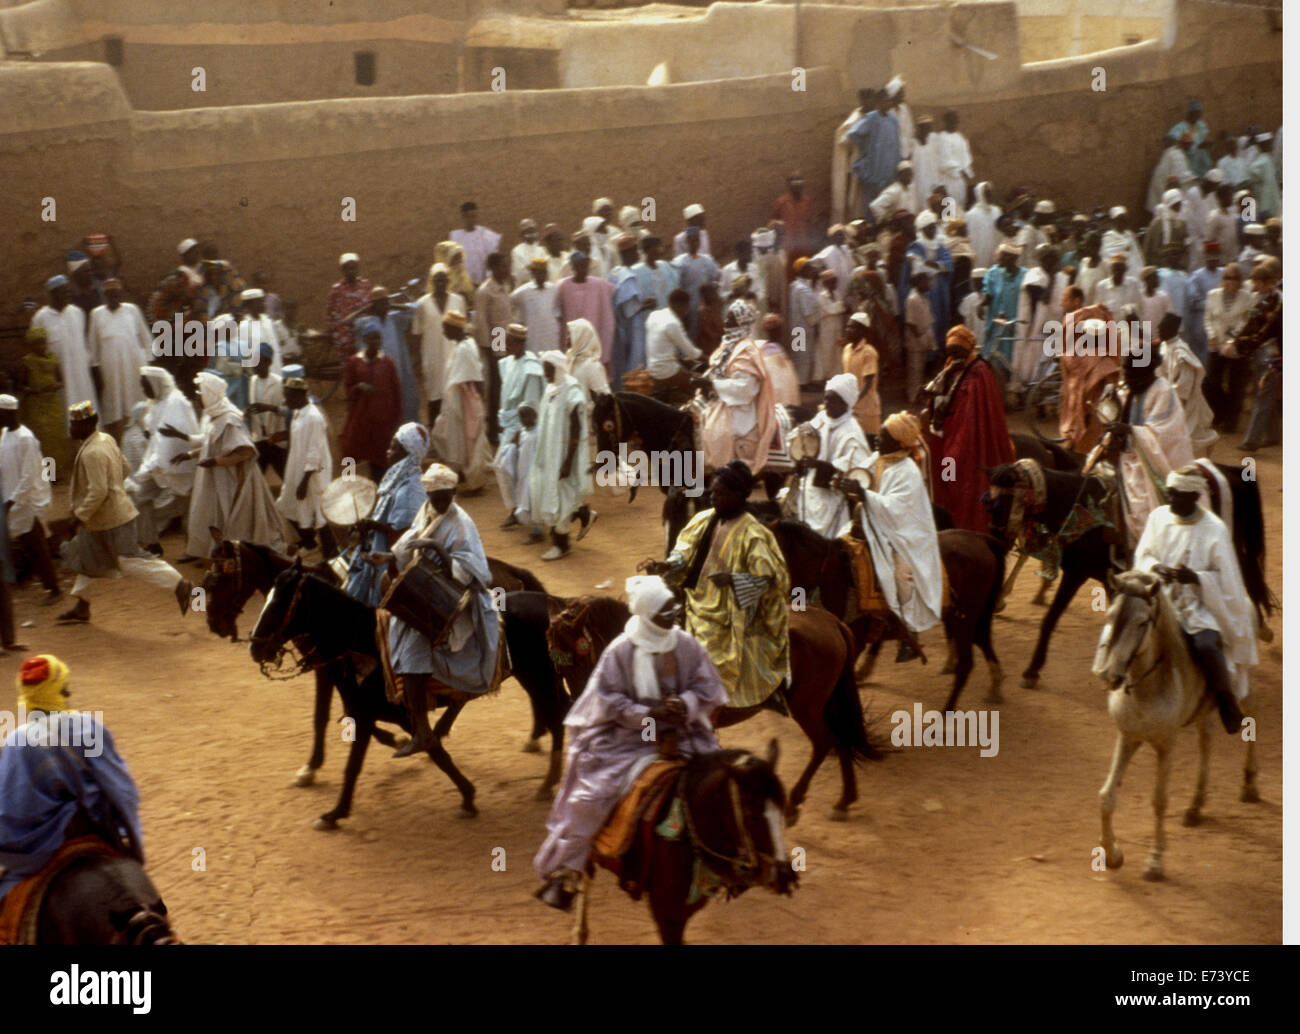 Parade von Adligen auf dem Pferderücken anlässlich der Eid-Feierlichkeiten in Kano, Nigeria, in den 1970er Jahren Stockfoto